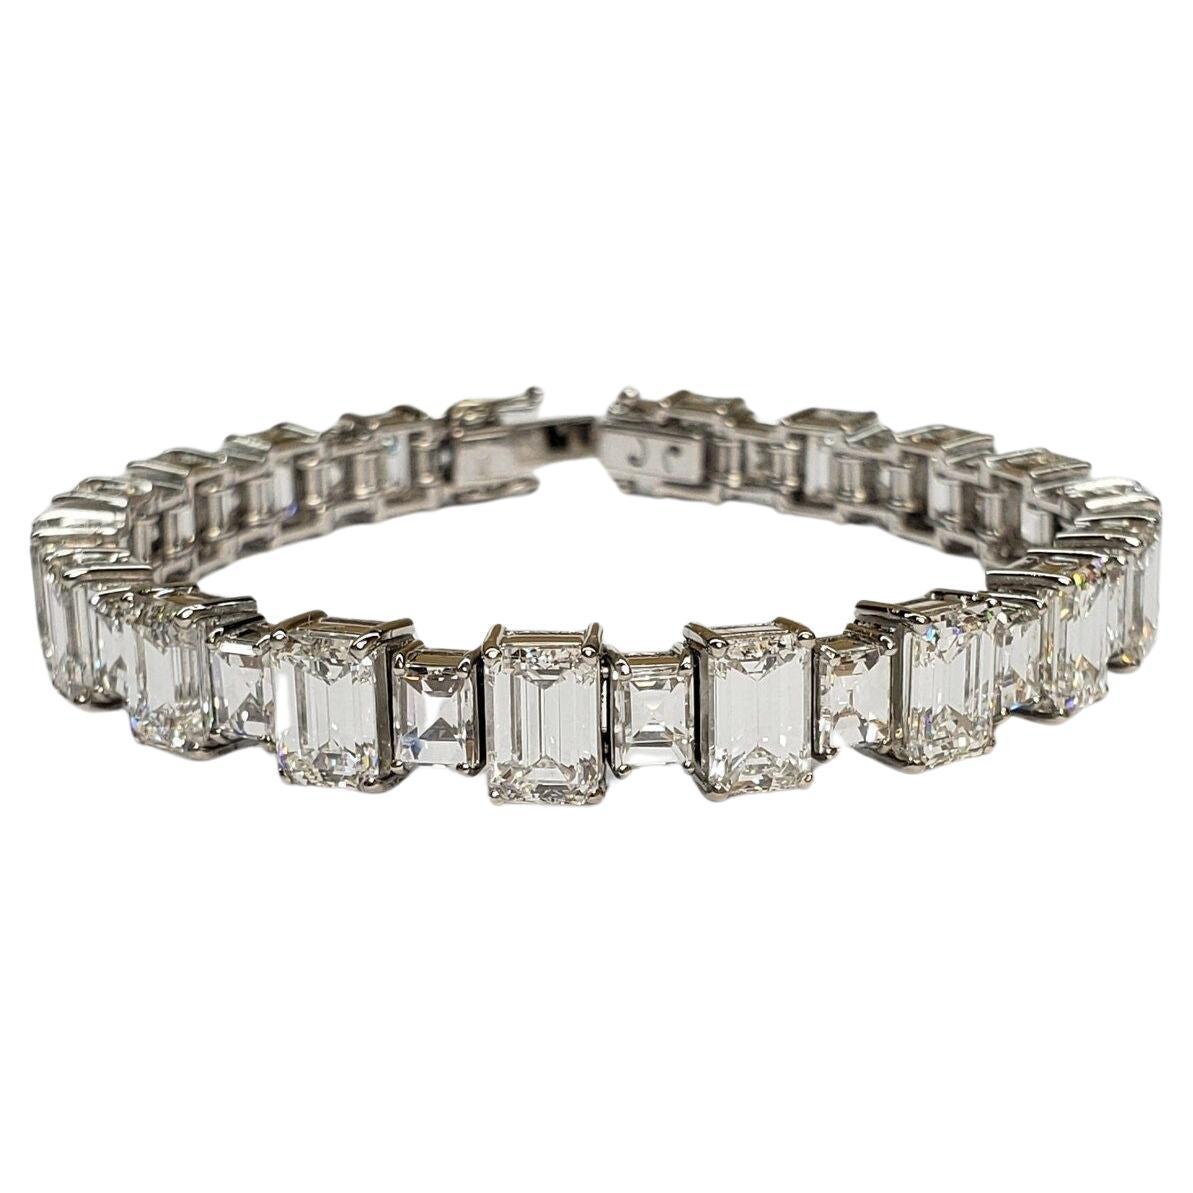 Bracelet en platine avec diamants taille émeraude de 19 carats certifiés GIA